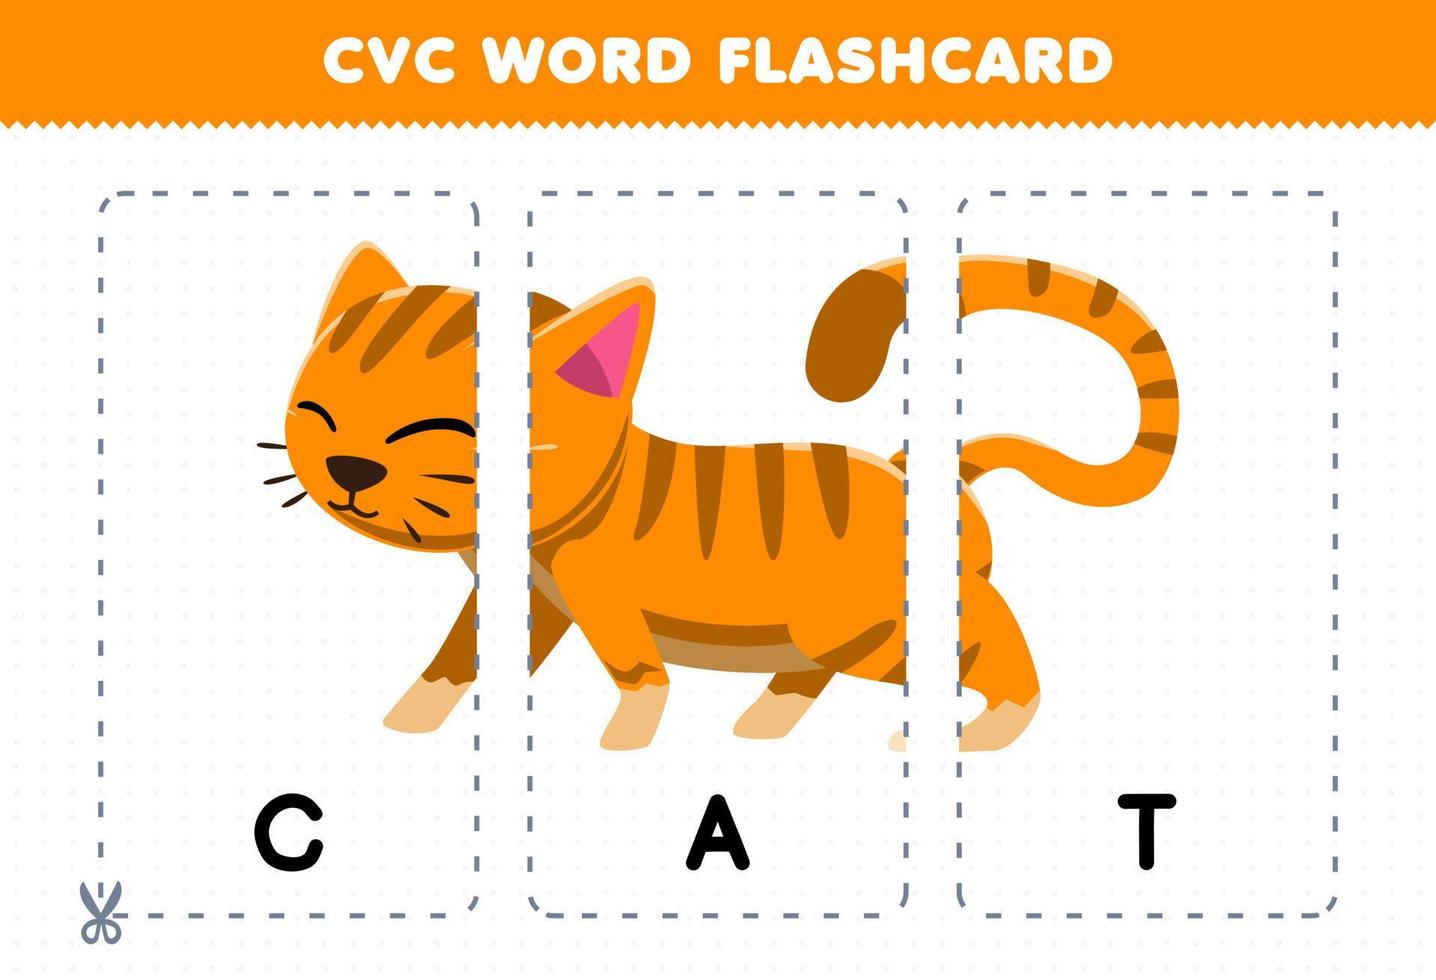 jogo de educação para crianças aprendendo palavra consoante vogal consoante com cartão de memória para impressão de ilustração de gato bonito dos desenhos animados vetor